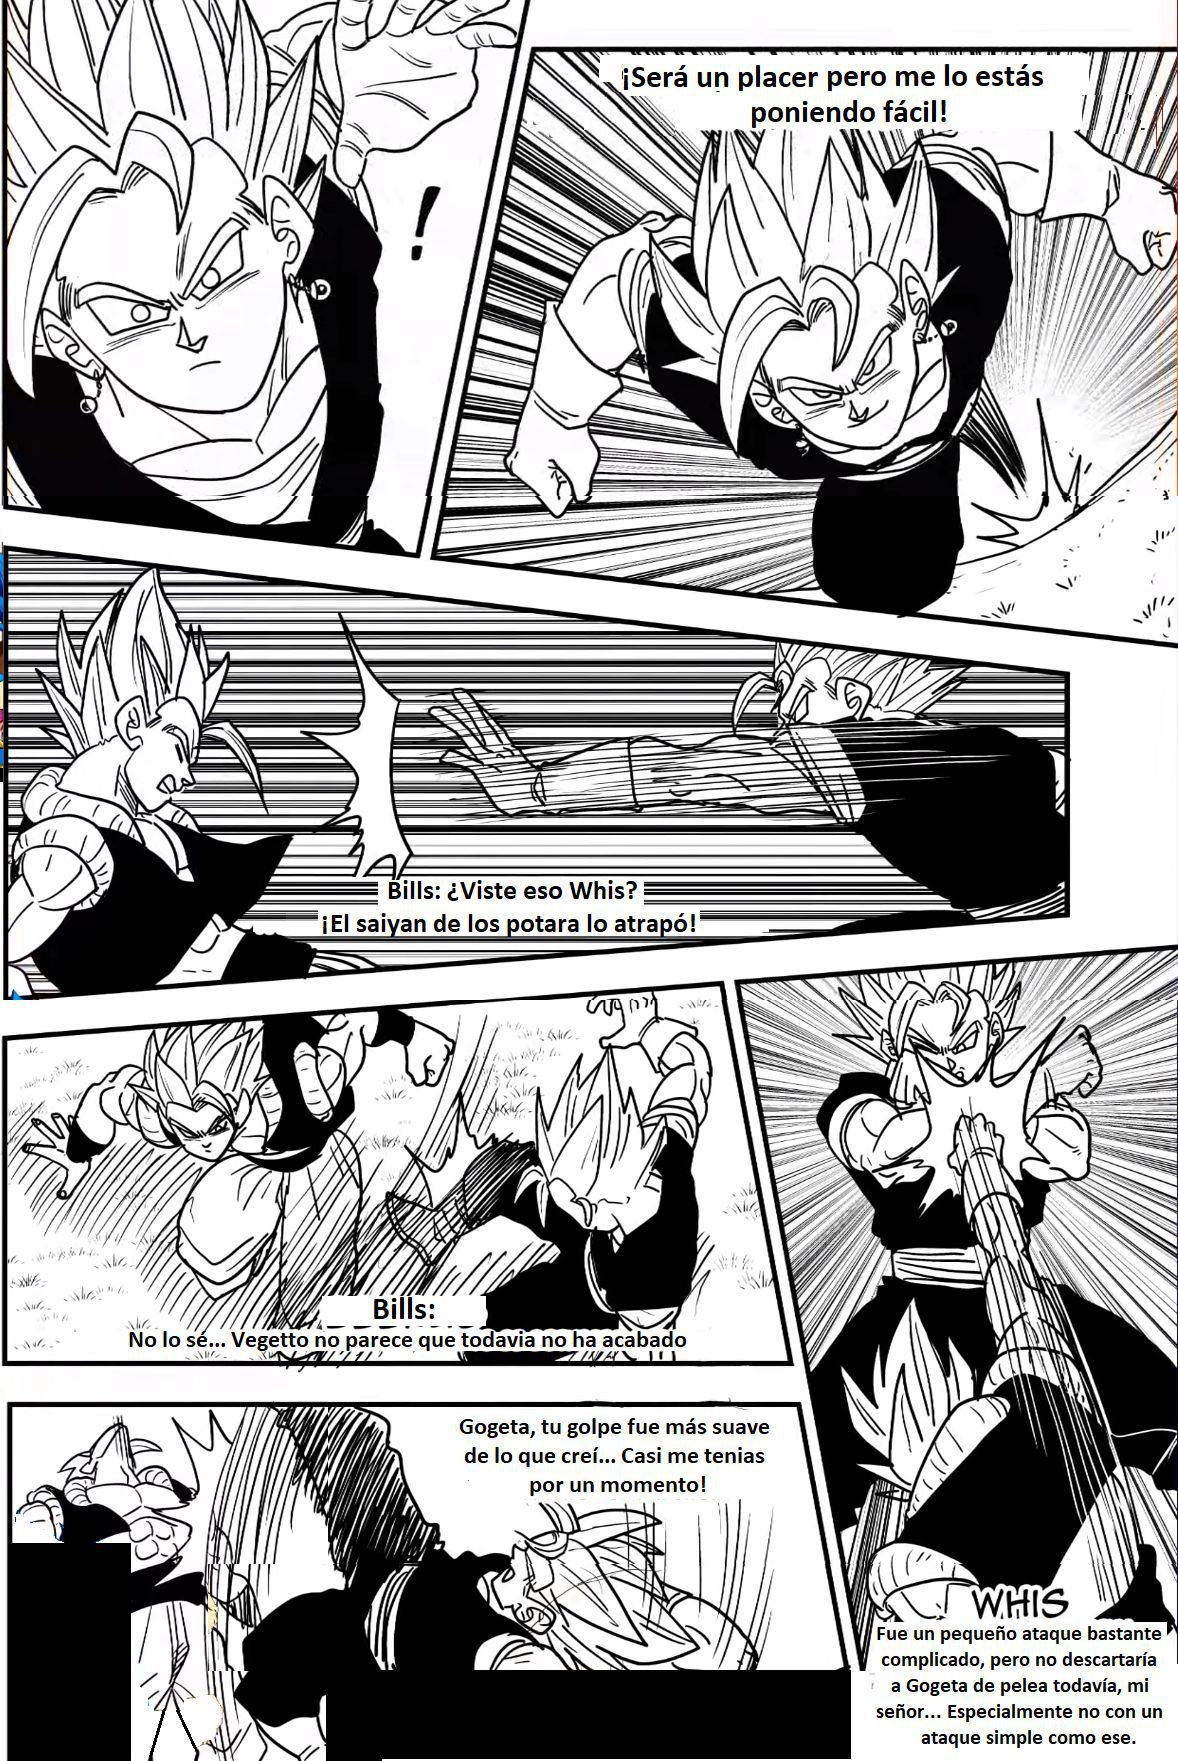 Beyond Dragon Ball Super: Gogeta And Vegito Meet! Vegito Mocks Gogeta! The Battle Of Fusions Begins! 12